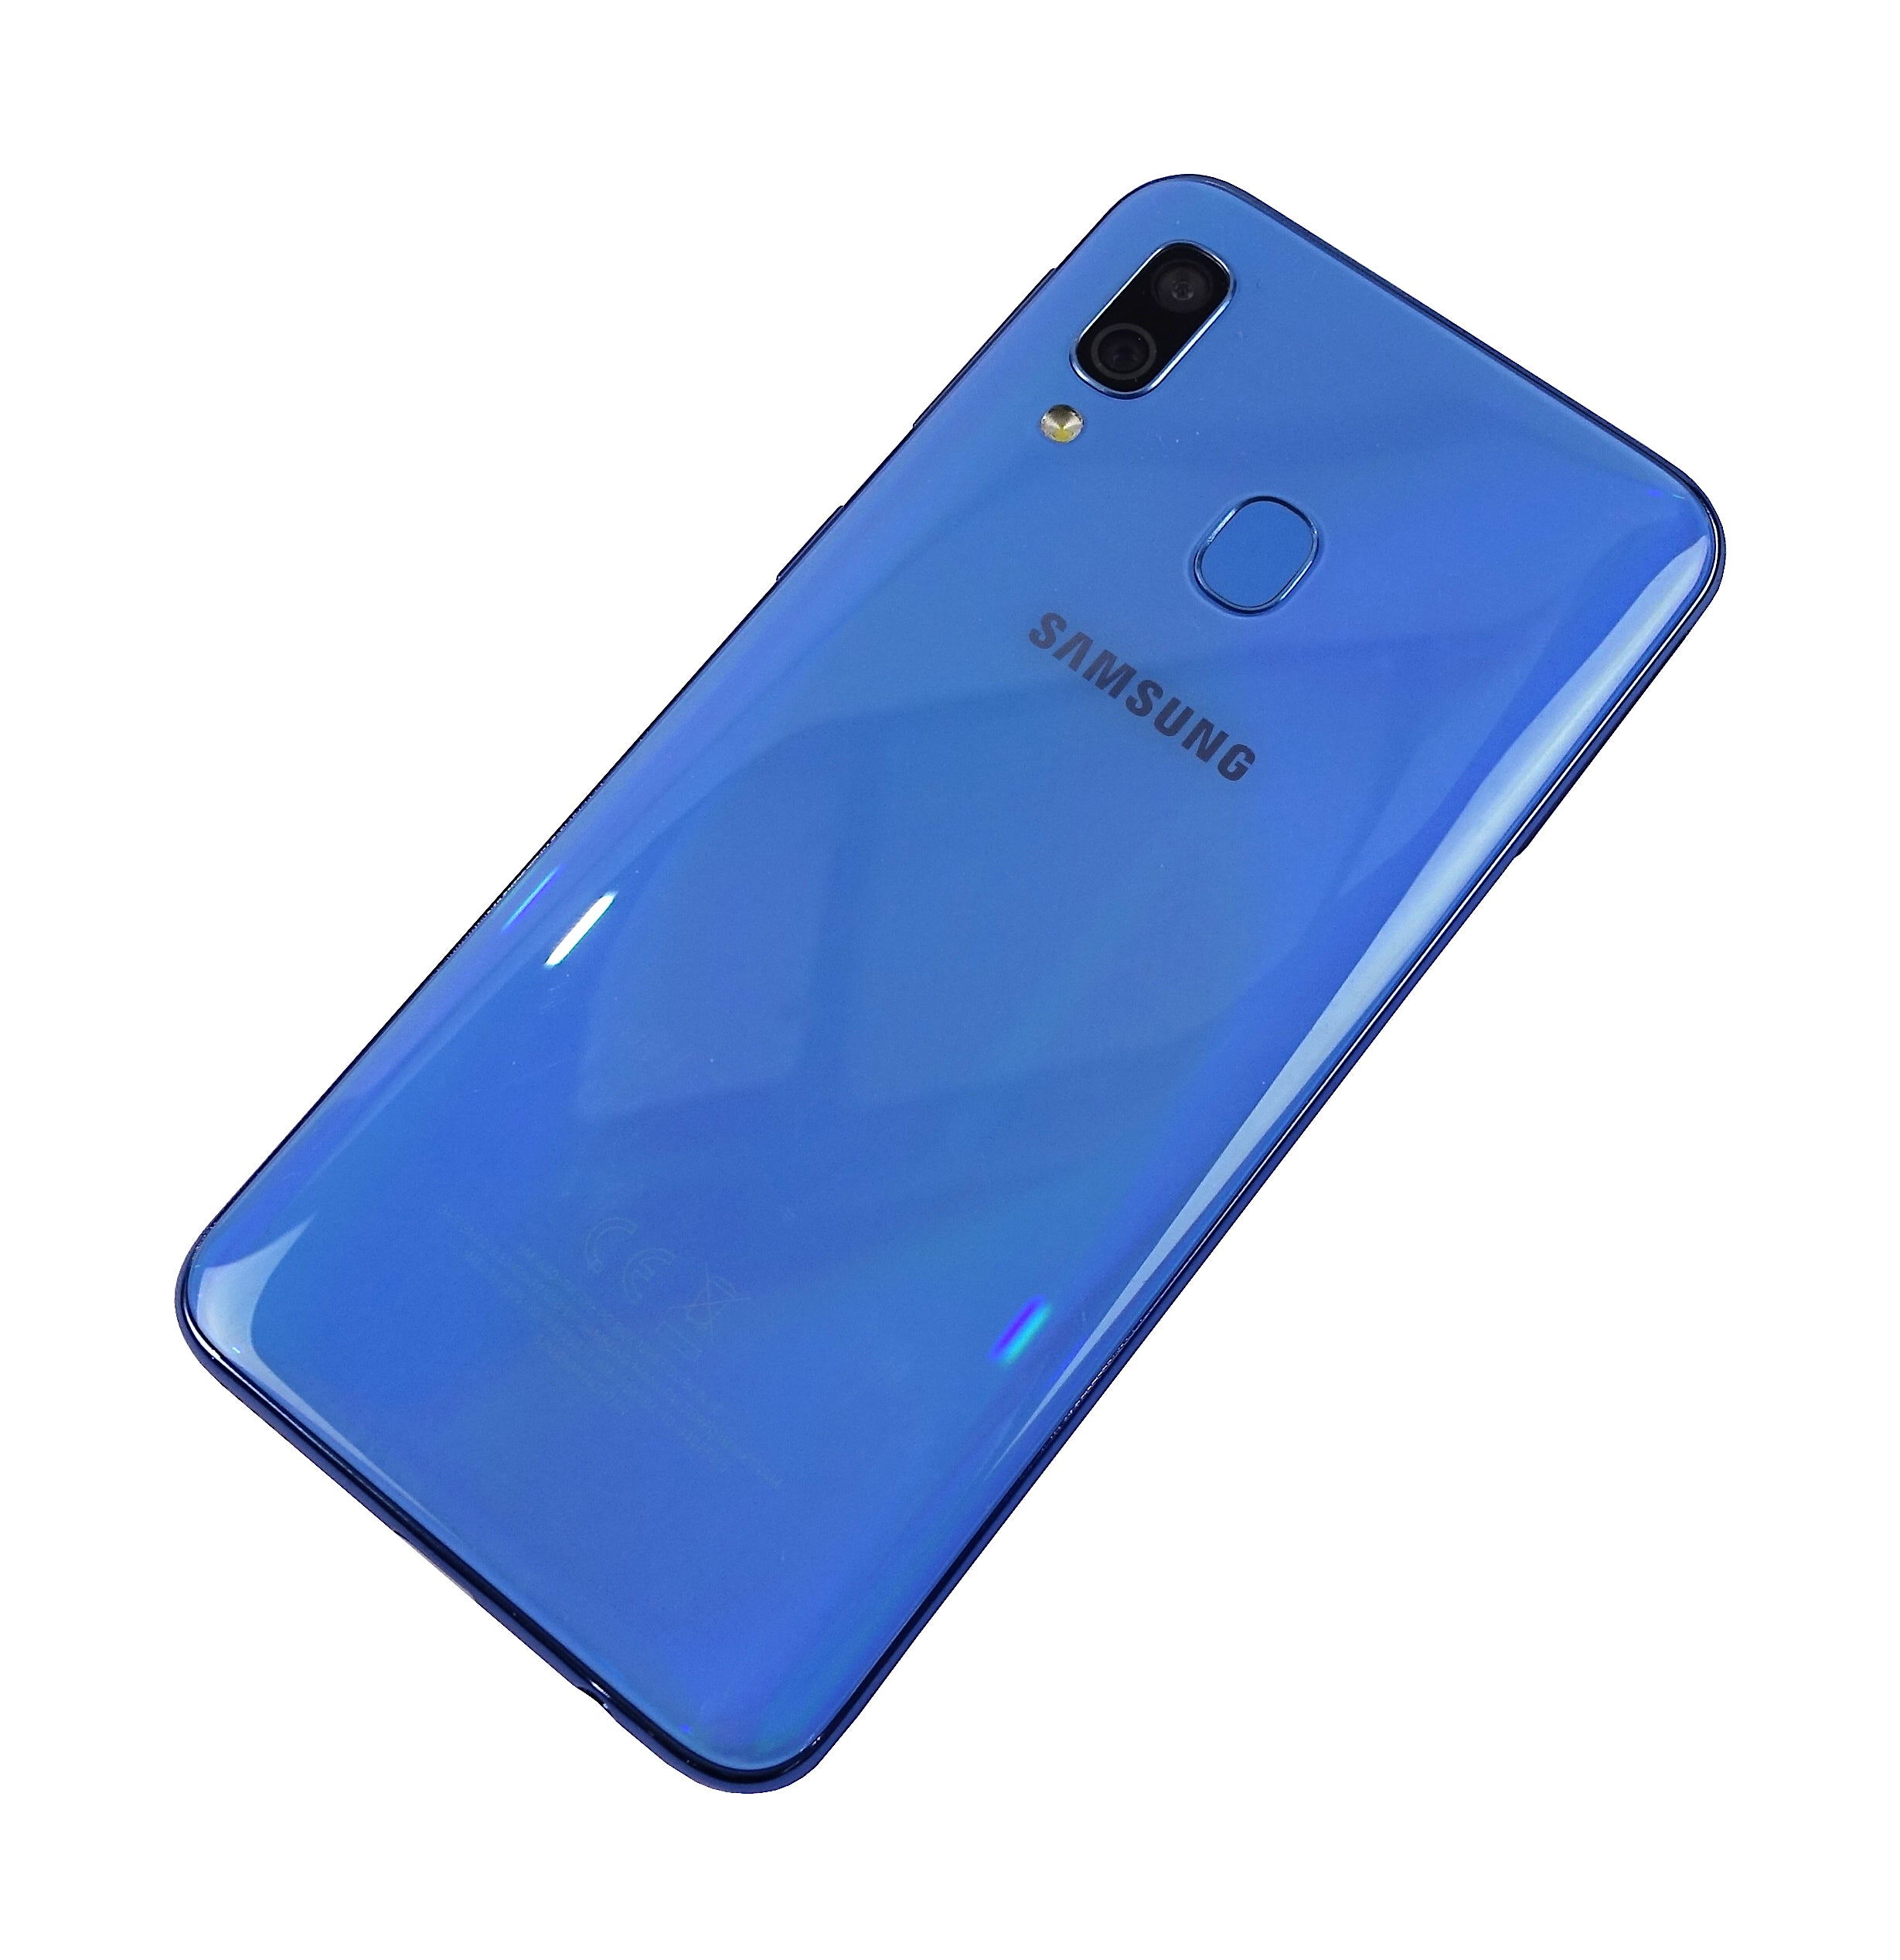 Samsung Galaxy A40 Smartphone, 64GB, Network Unlocked, SM-A405FN, Blue